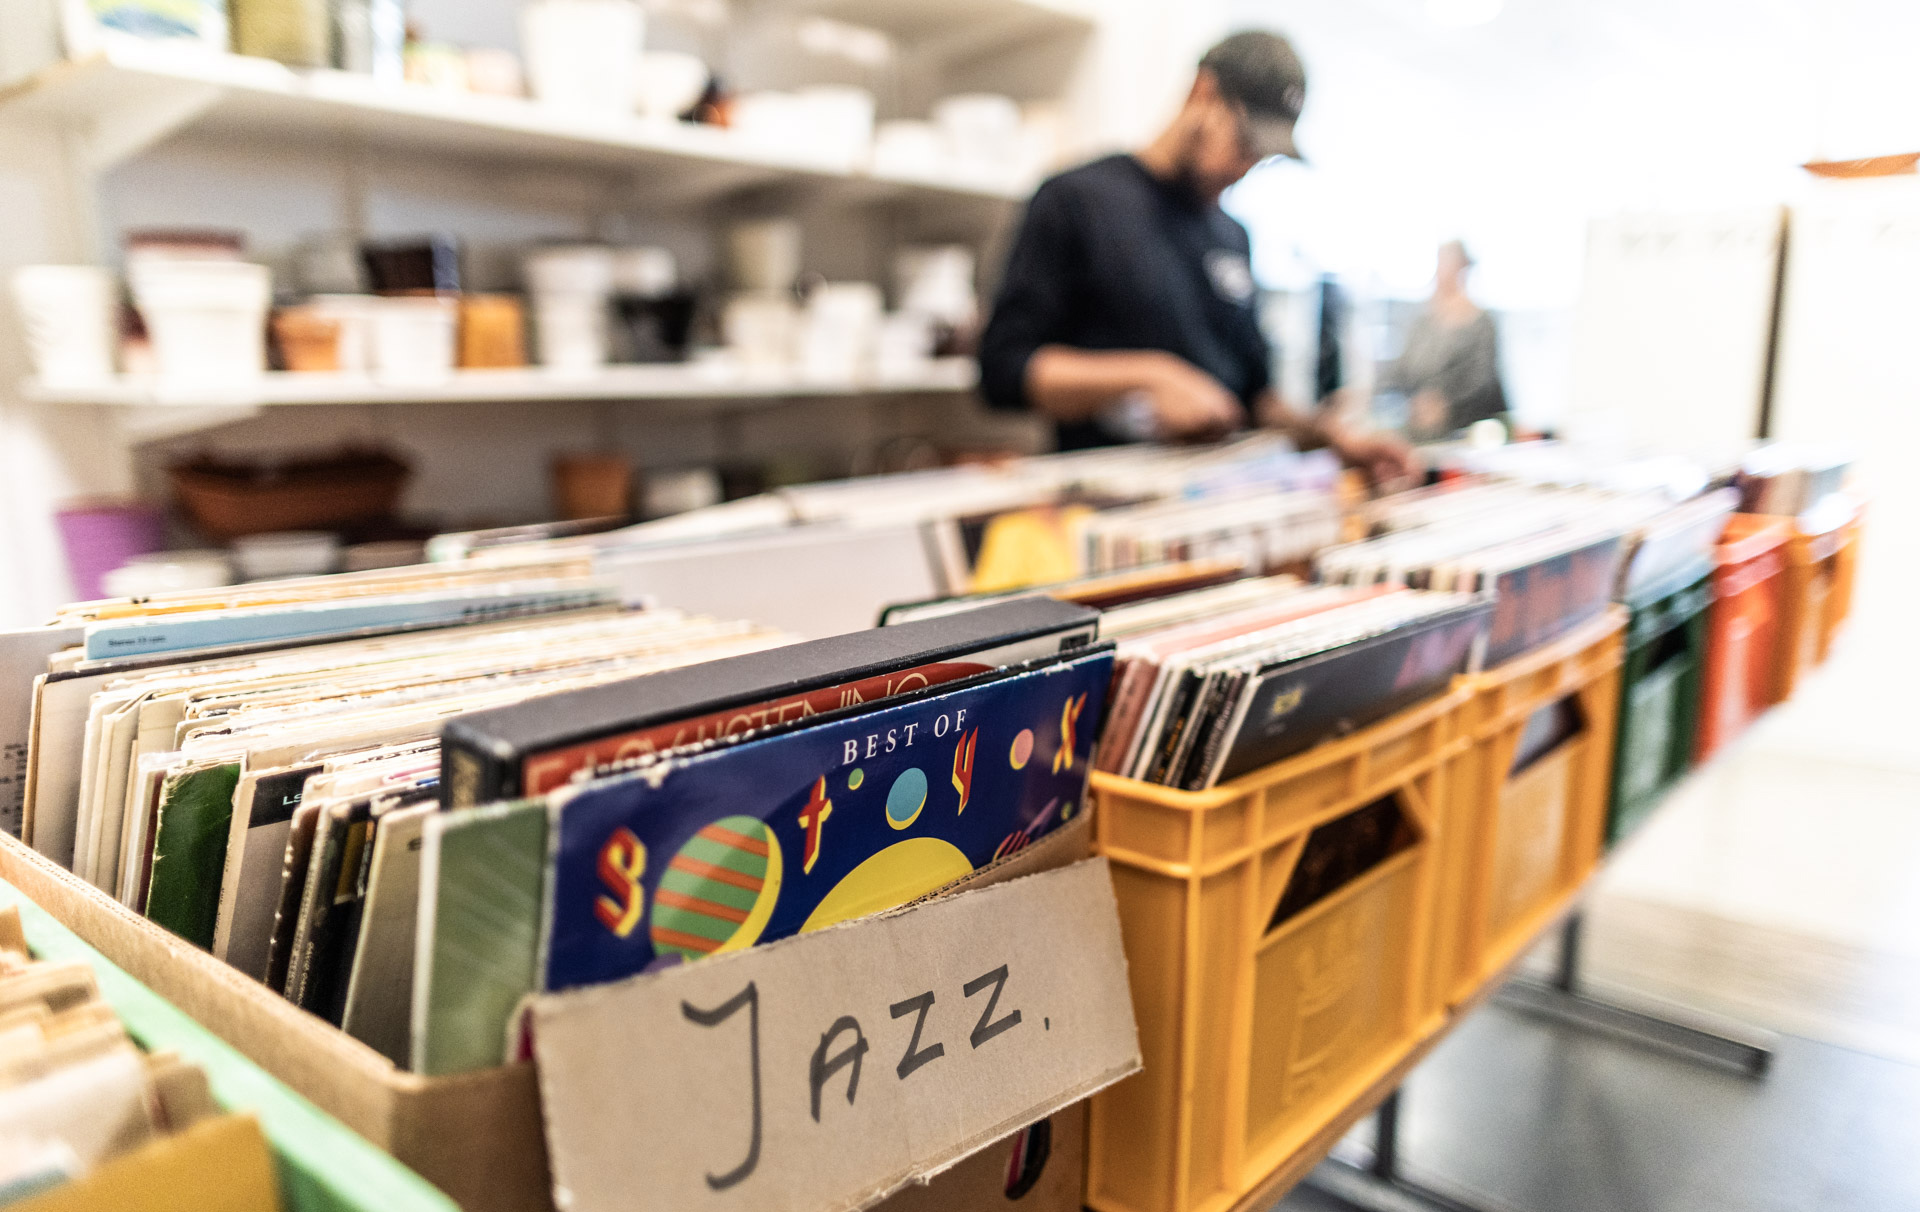 Inomhus i en butik. I förgrunden står plastbackar med LP-skivor med en skylt som det står jazz på. I bakgrunden en person som står och bläddrar bland skivorna.